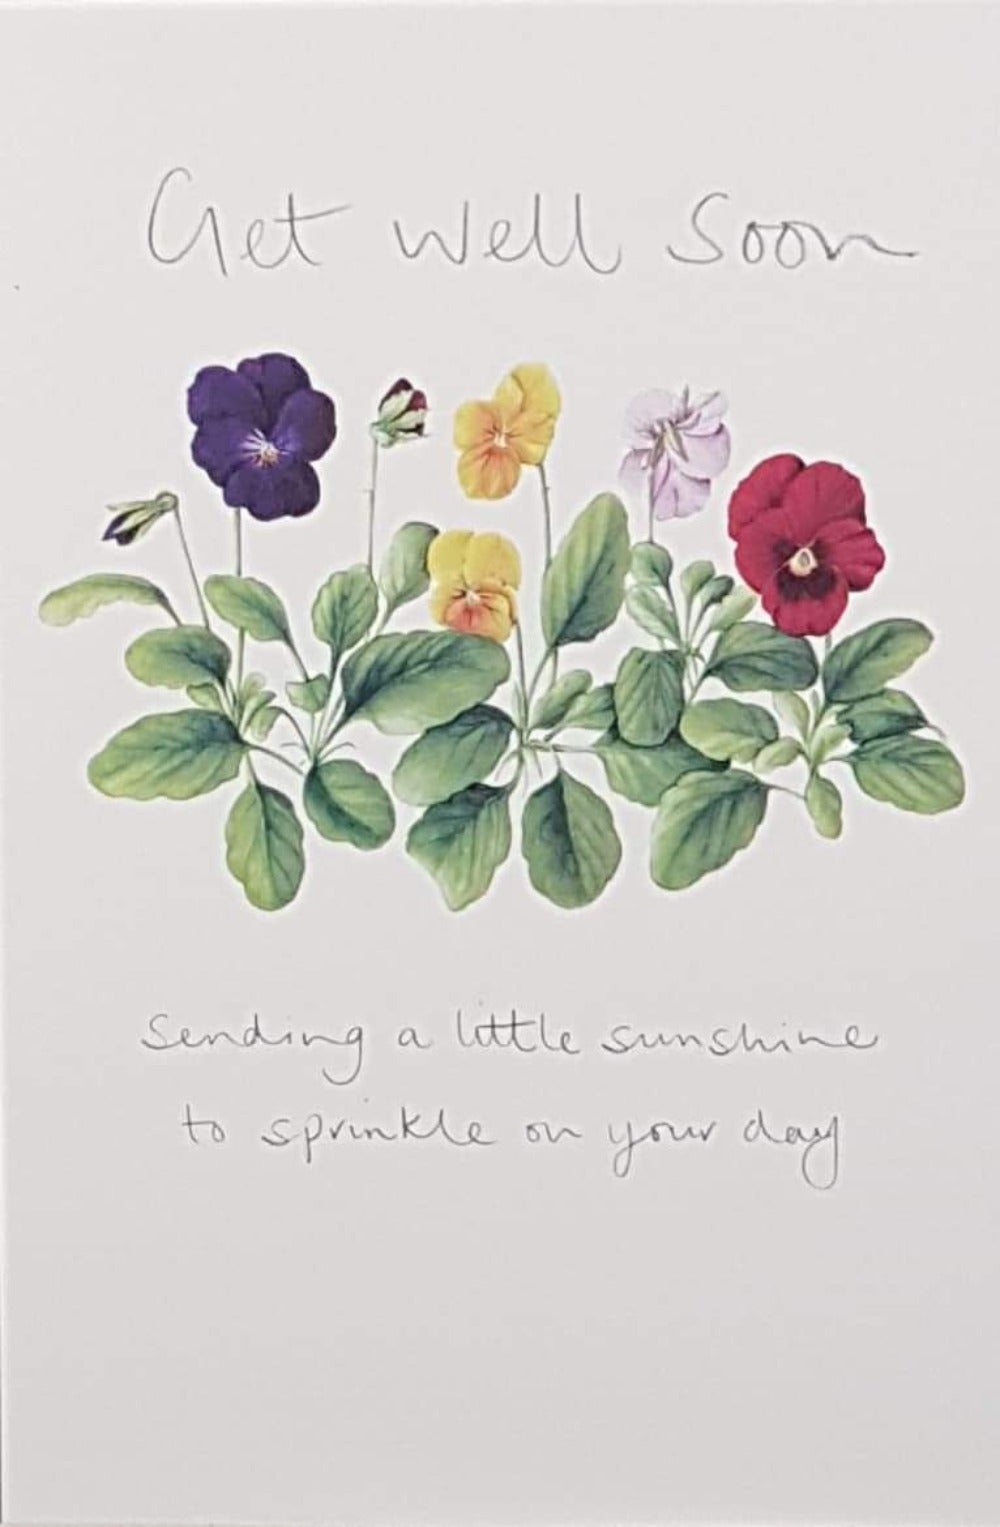 Get Well Card - Sending A Little Sunshine